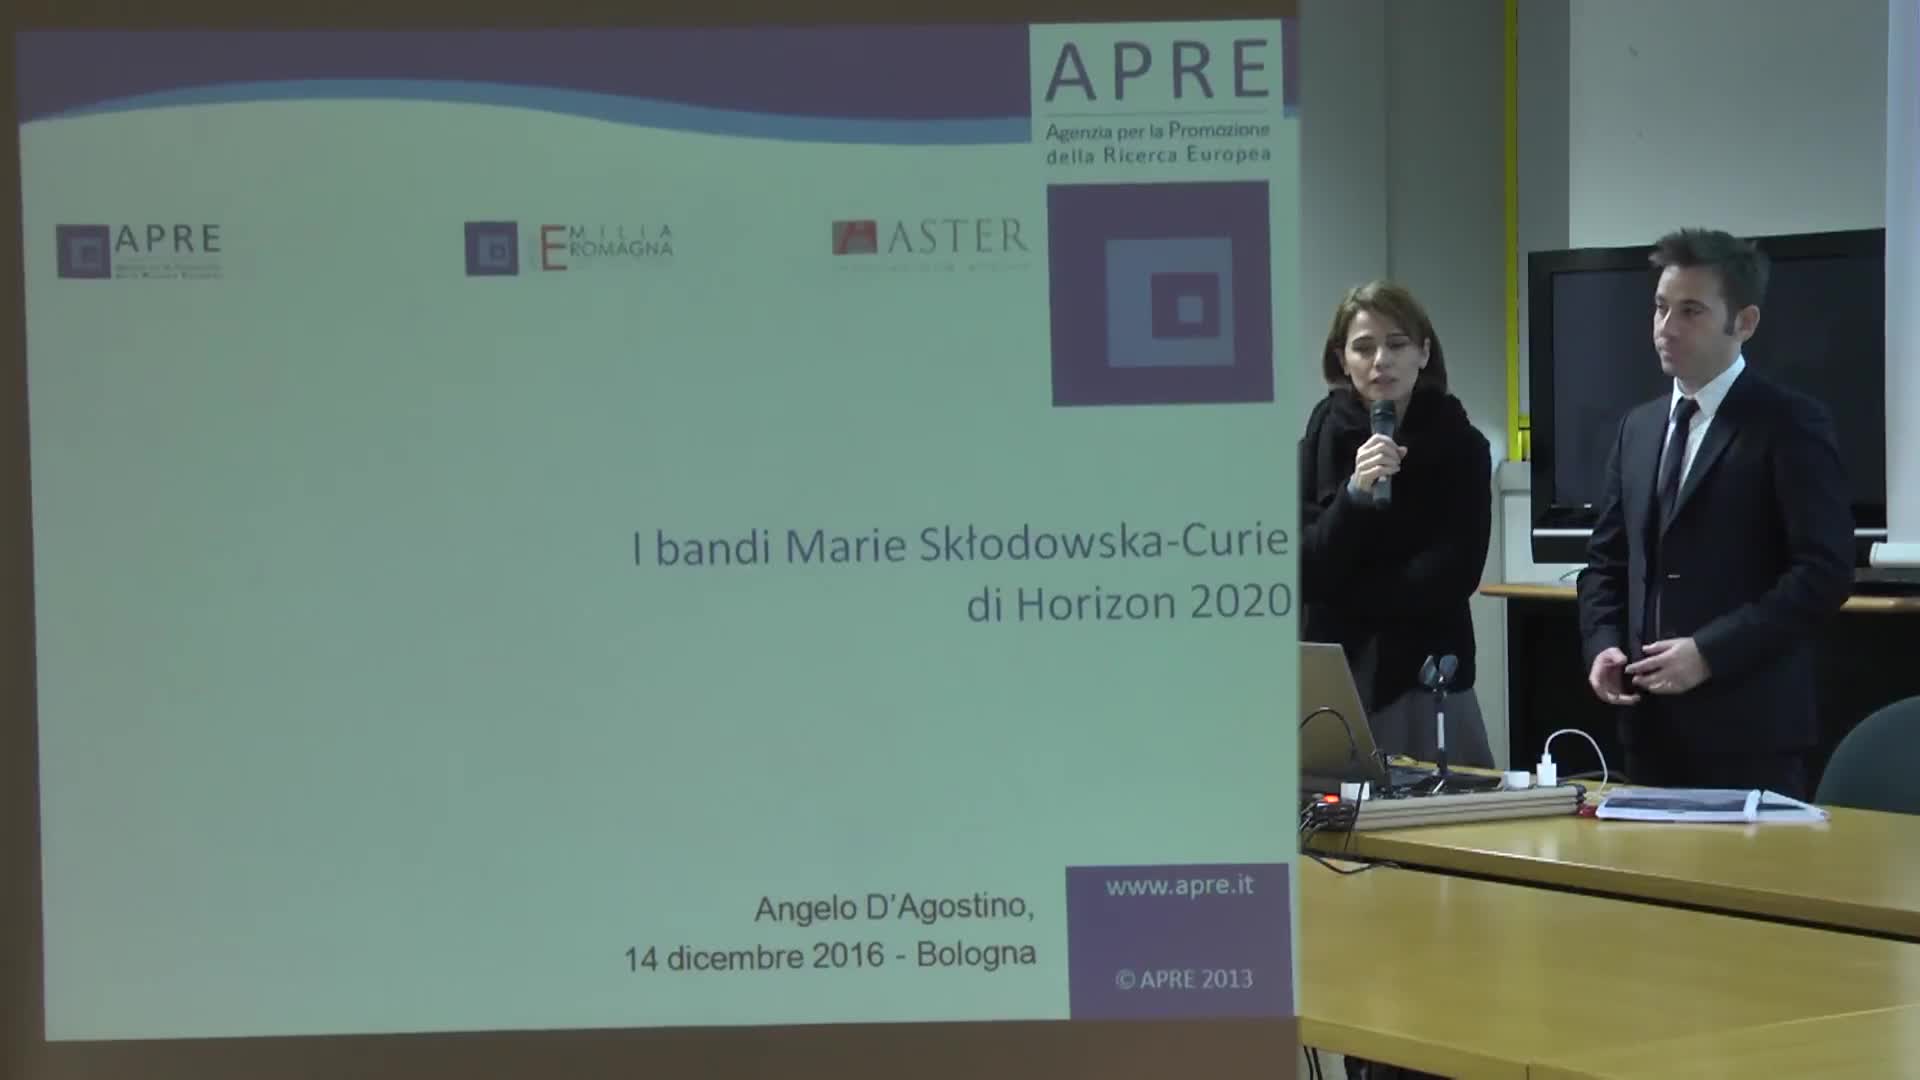 I bandi di Marie Sklodowska - Curie di Horizon 2020 - immagine